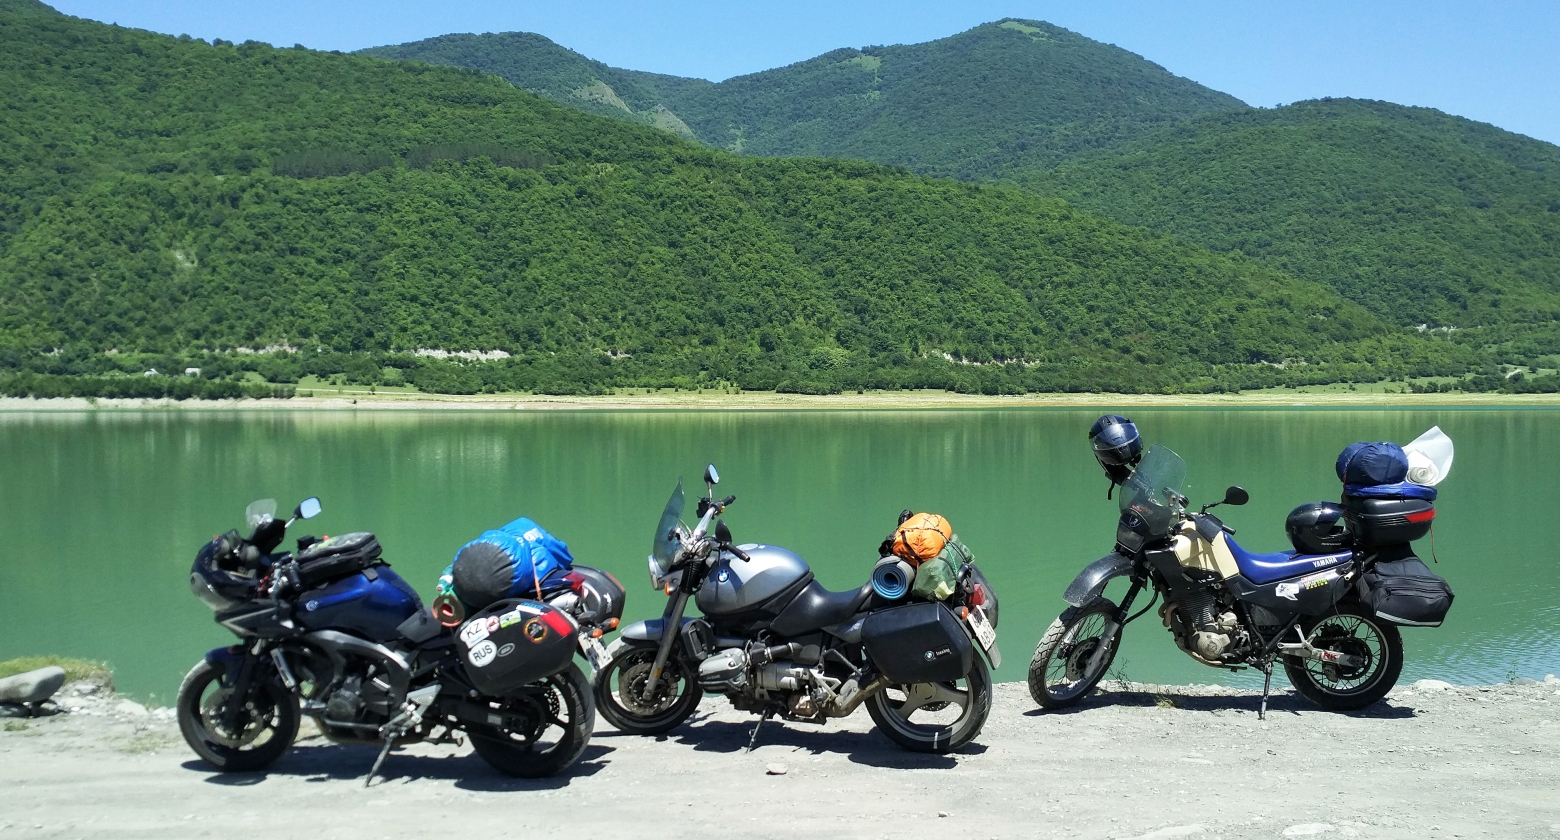 Asia touring. РУСМОТОТРЕВЕЛ мотопутешествия. Мотоциклетный туризм. Мотоцикл для путешествий. Поездка на мотоцикле.